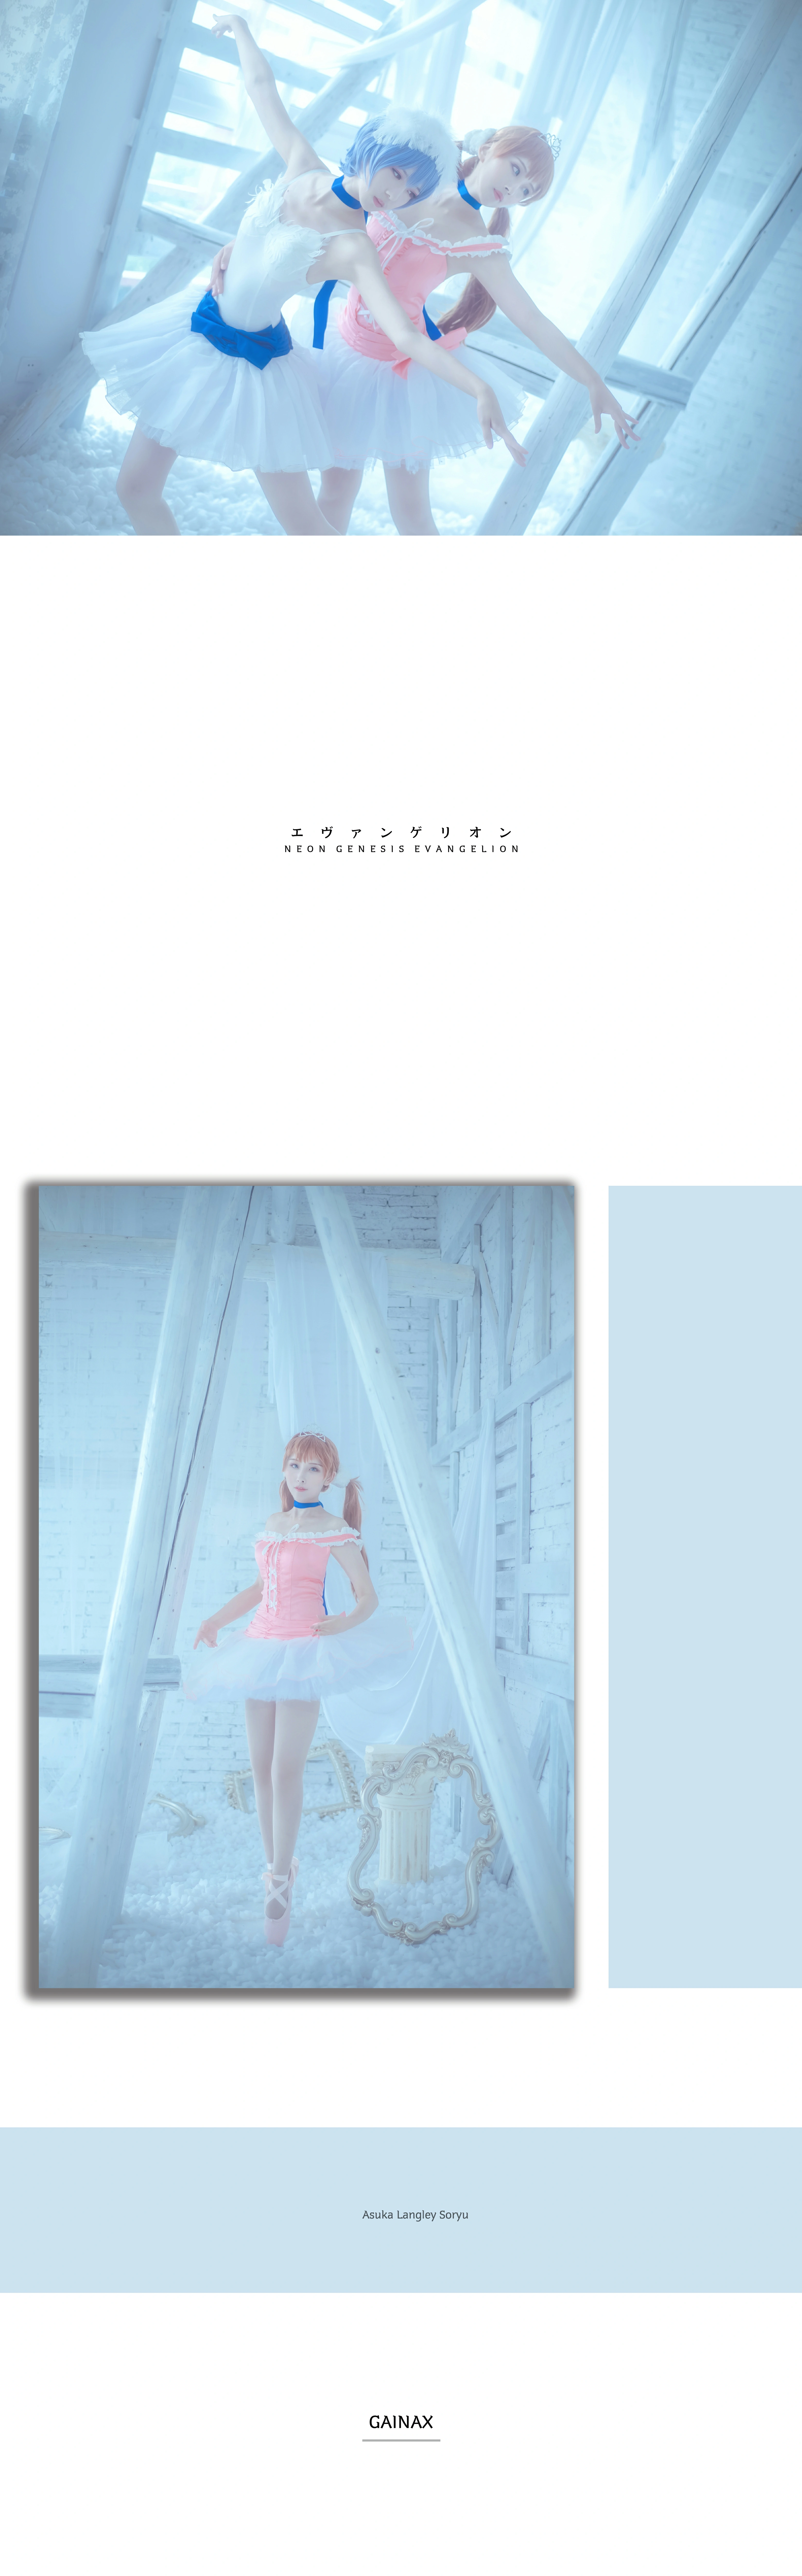 动漫网红小美女 弥音音ww 明日香芭蕾舞制服裙加白色丝袜美腿私房写真集,15(15)